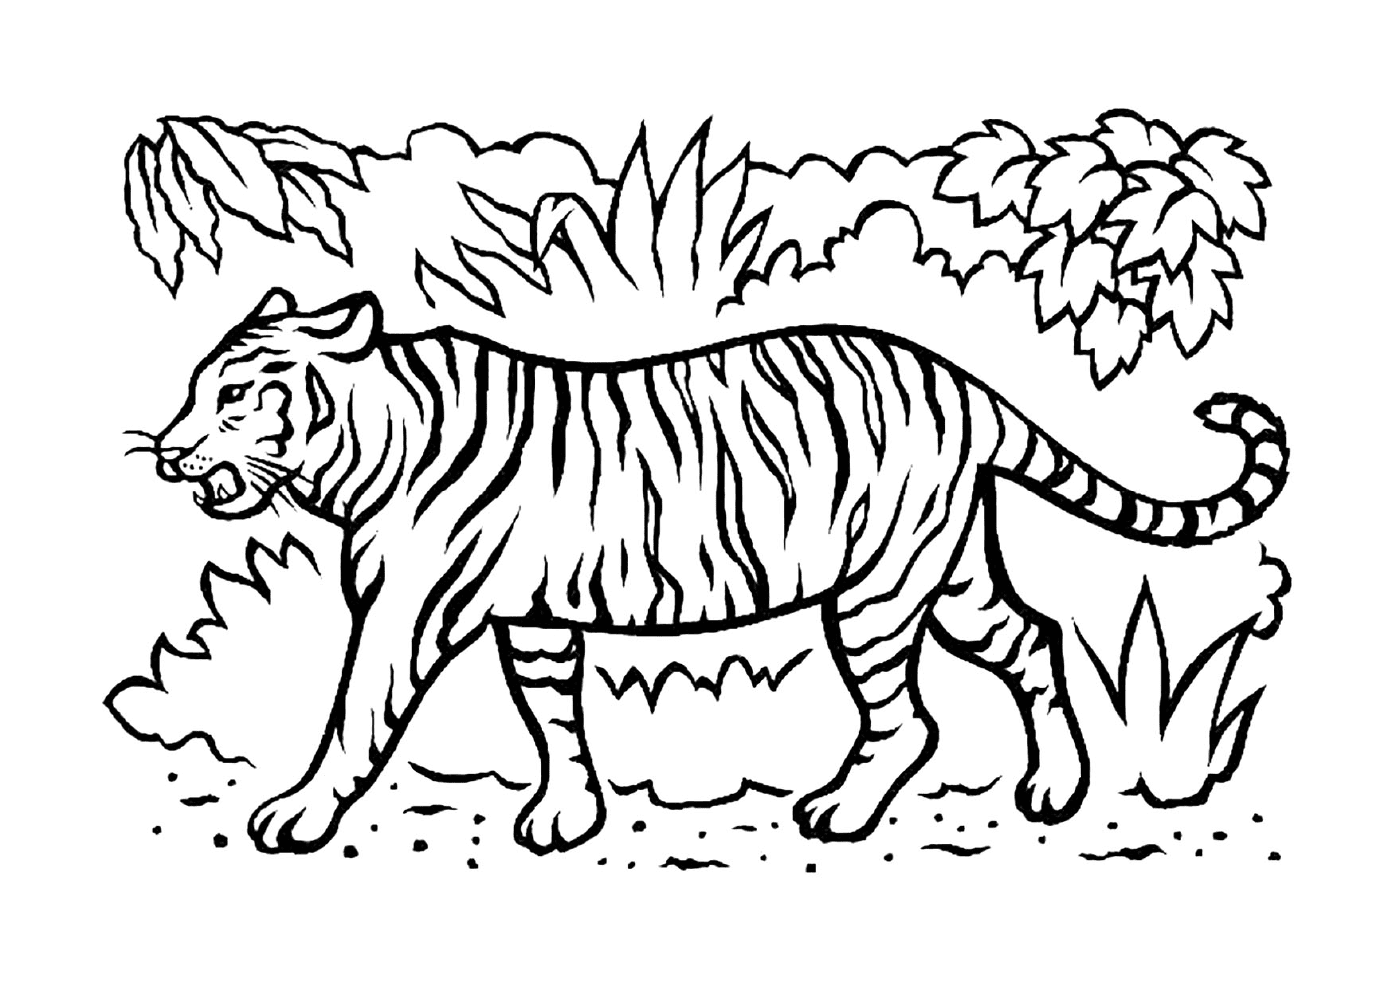  Un hermoso tigre en la sabana 